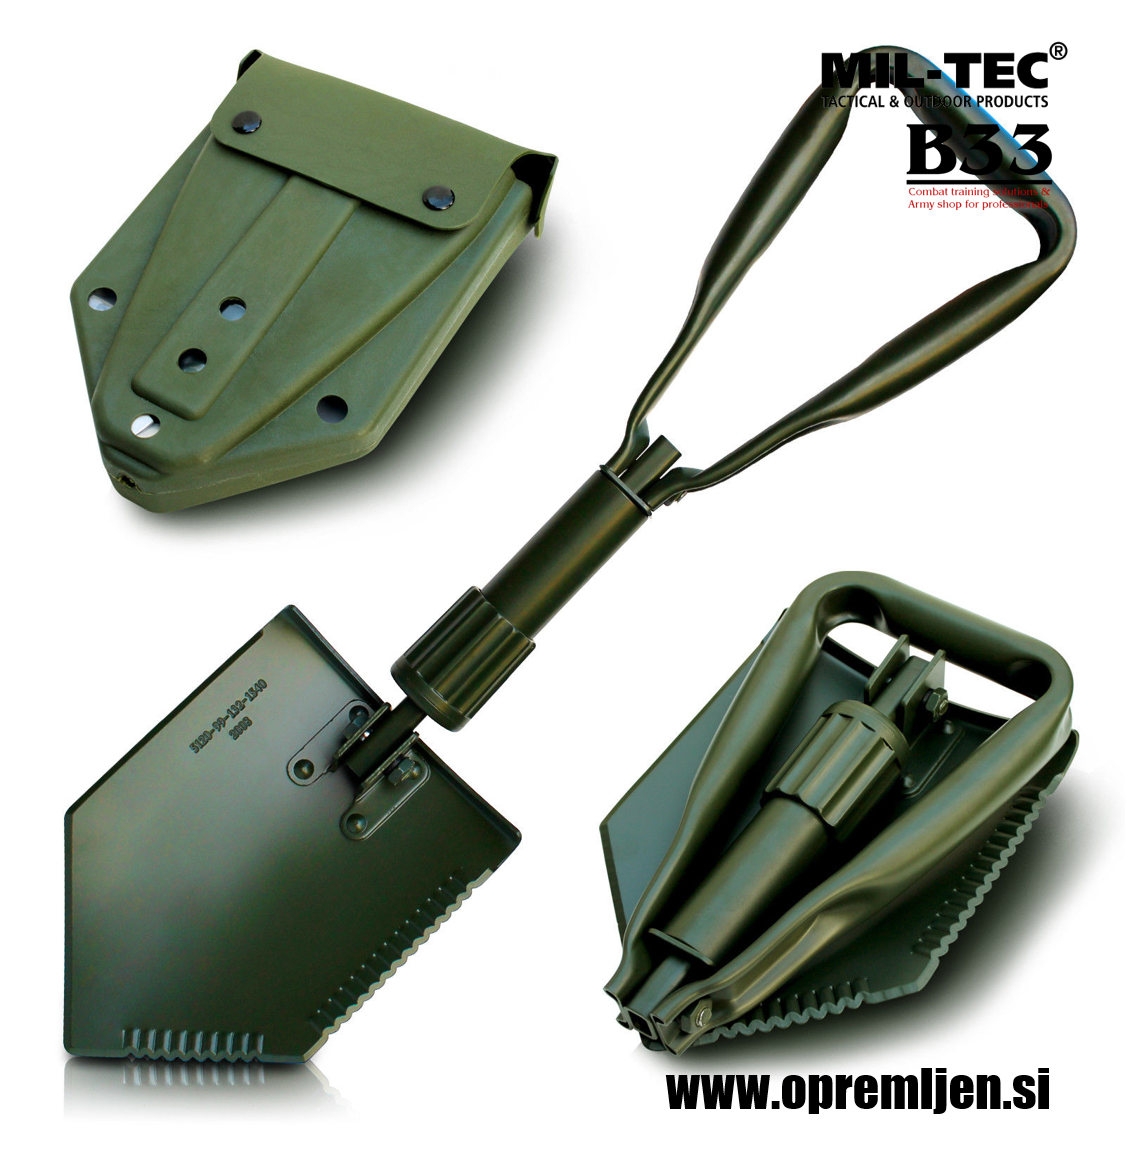 B33 army shop - ALICE vojaška torbica z vojaško zložljivo lopato MILTEC by B33 army shop at www.opremljen.si, trgovina z vojaško opremo, vojaška trgovina